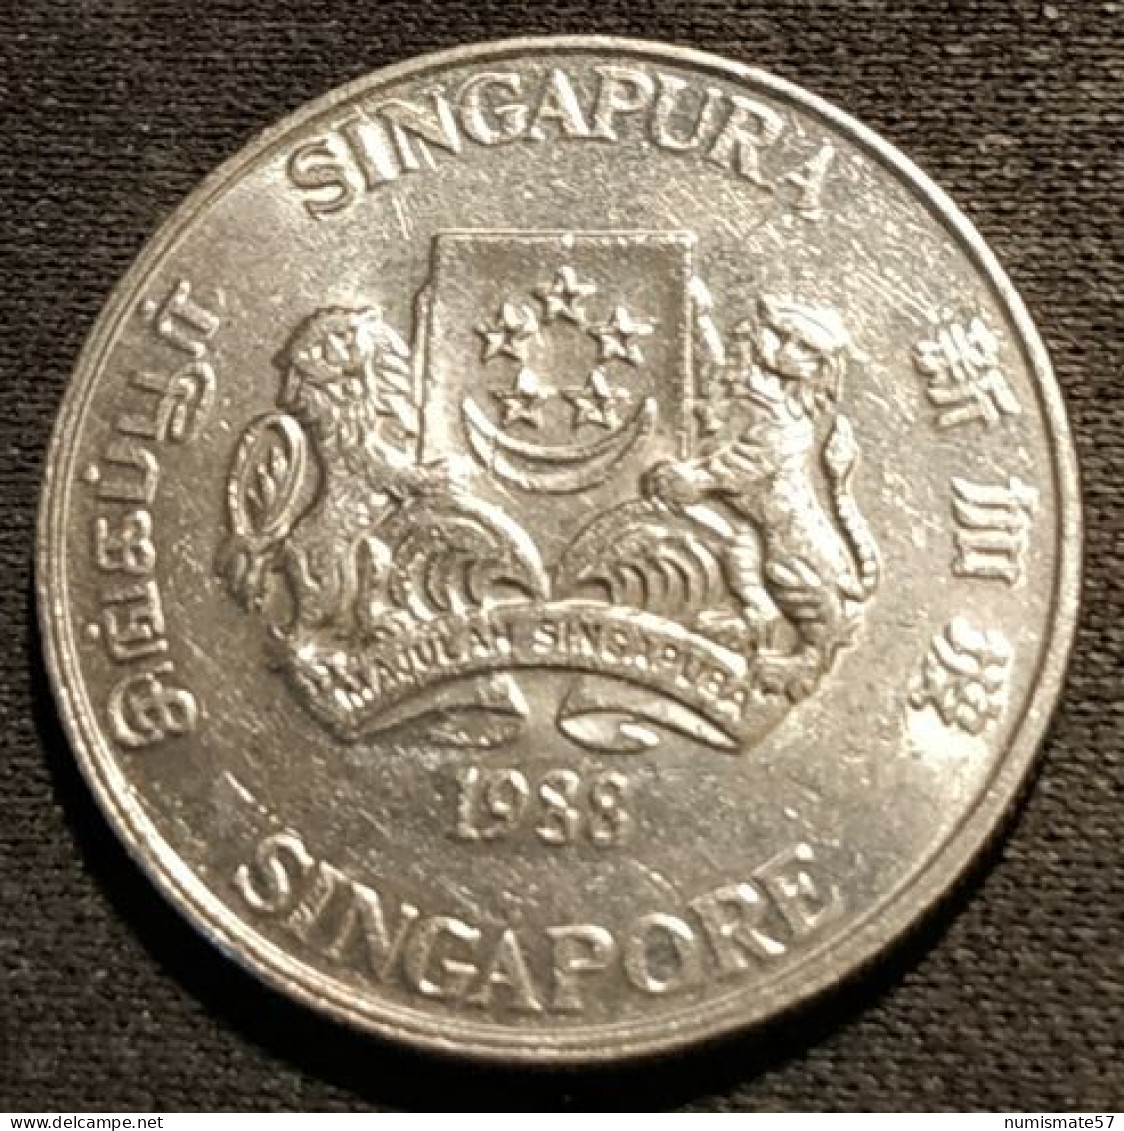 SINGAPOUR - SINGAPORE - 20 CENTS 1988 - KM 52 - ( Blason Haut ) - Singapour